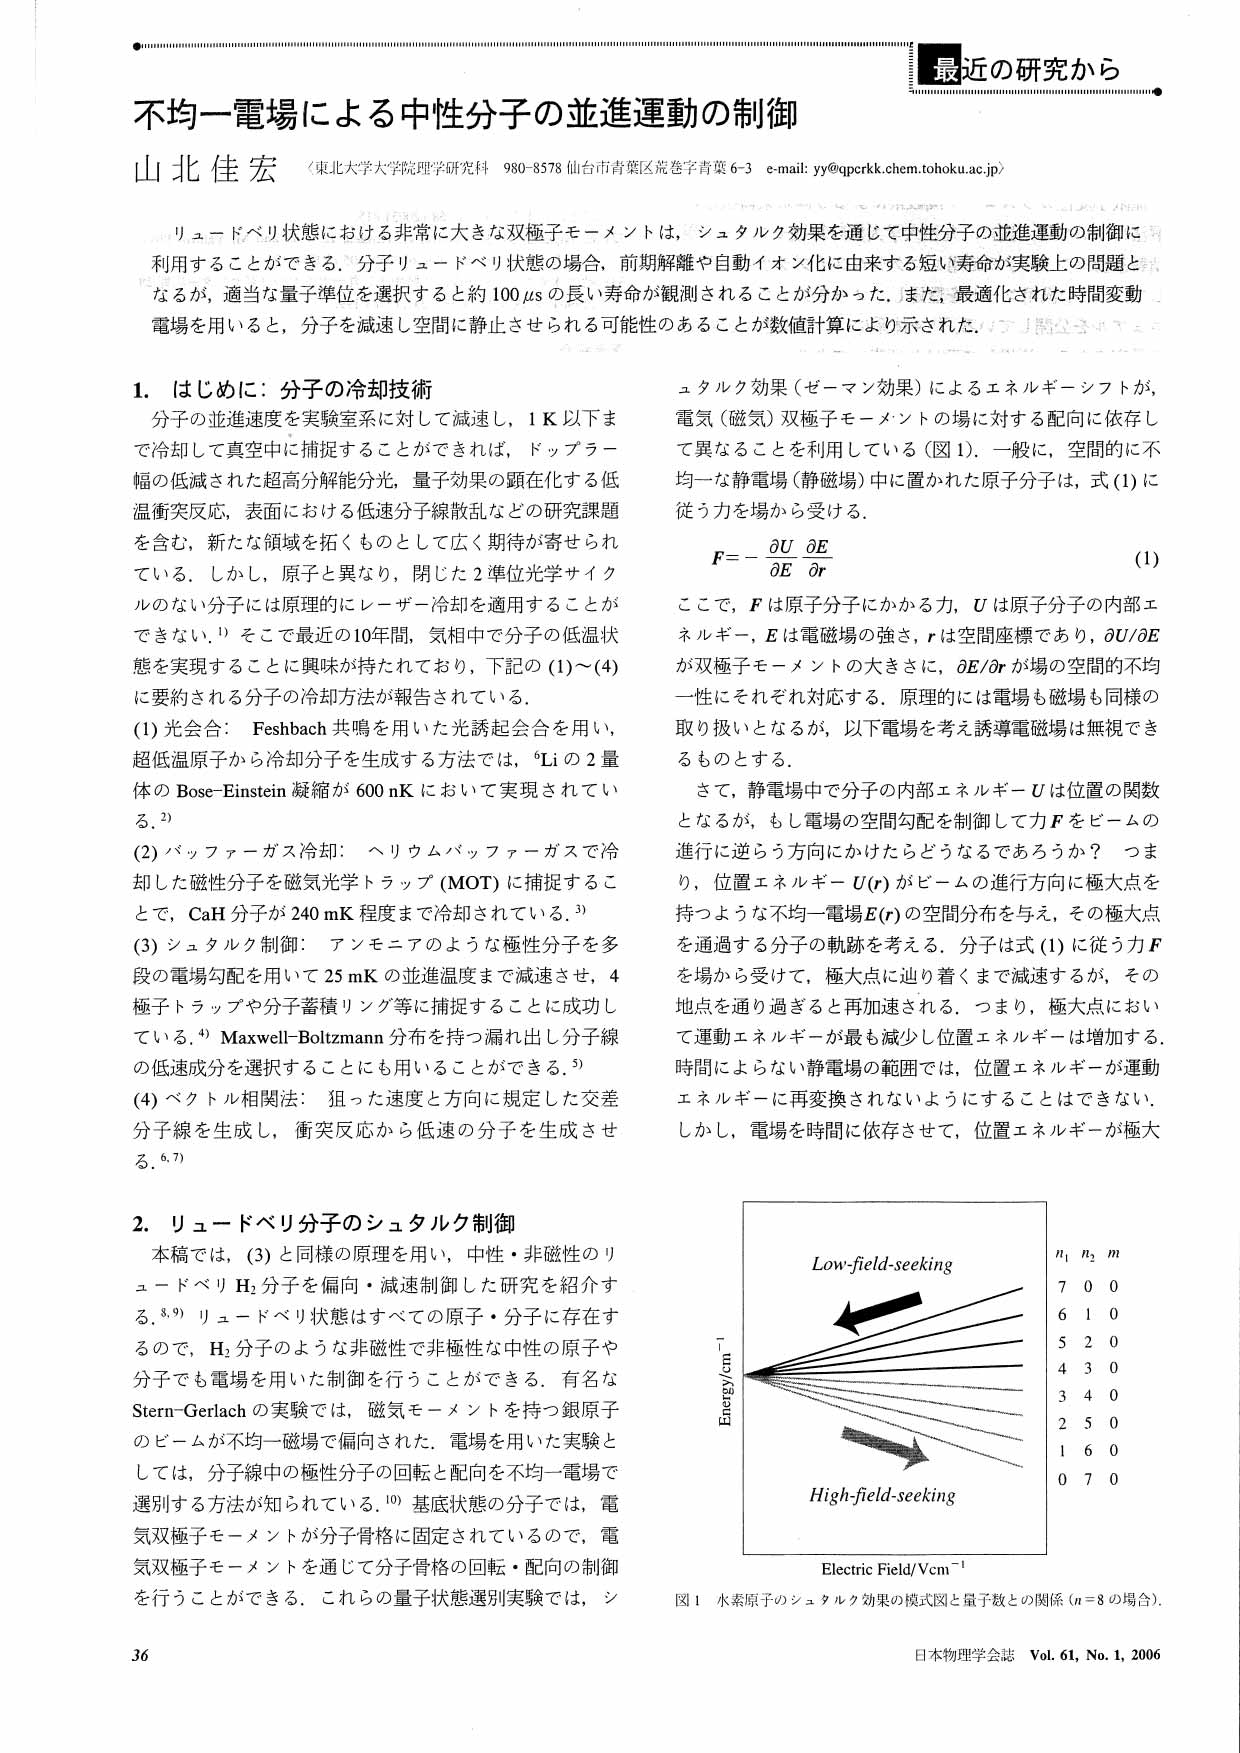 日本物理学会誌 61, 36 (2006)